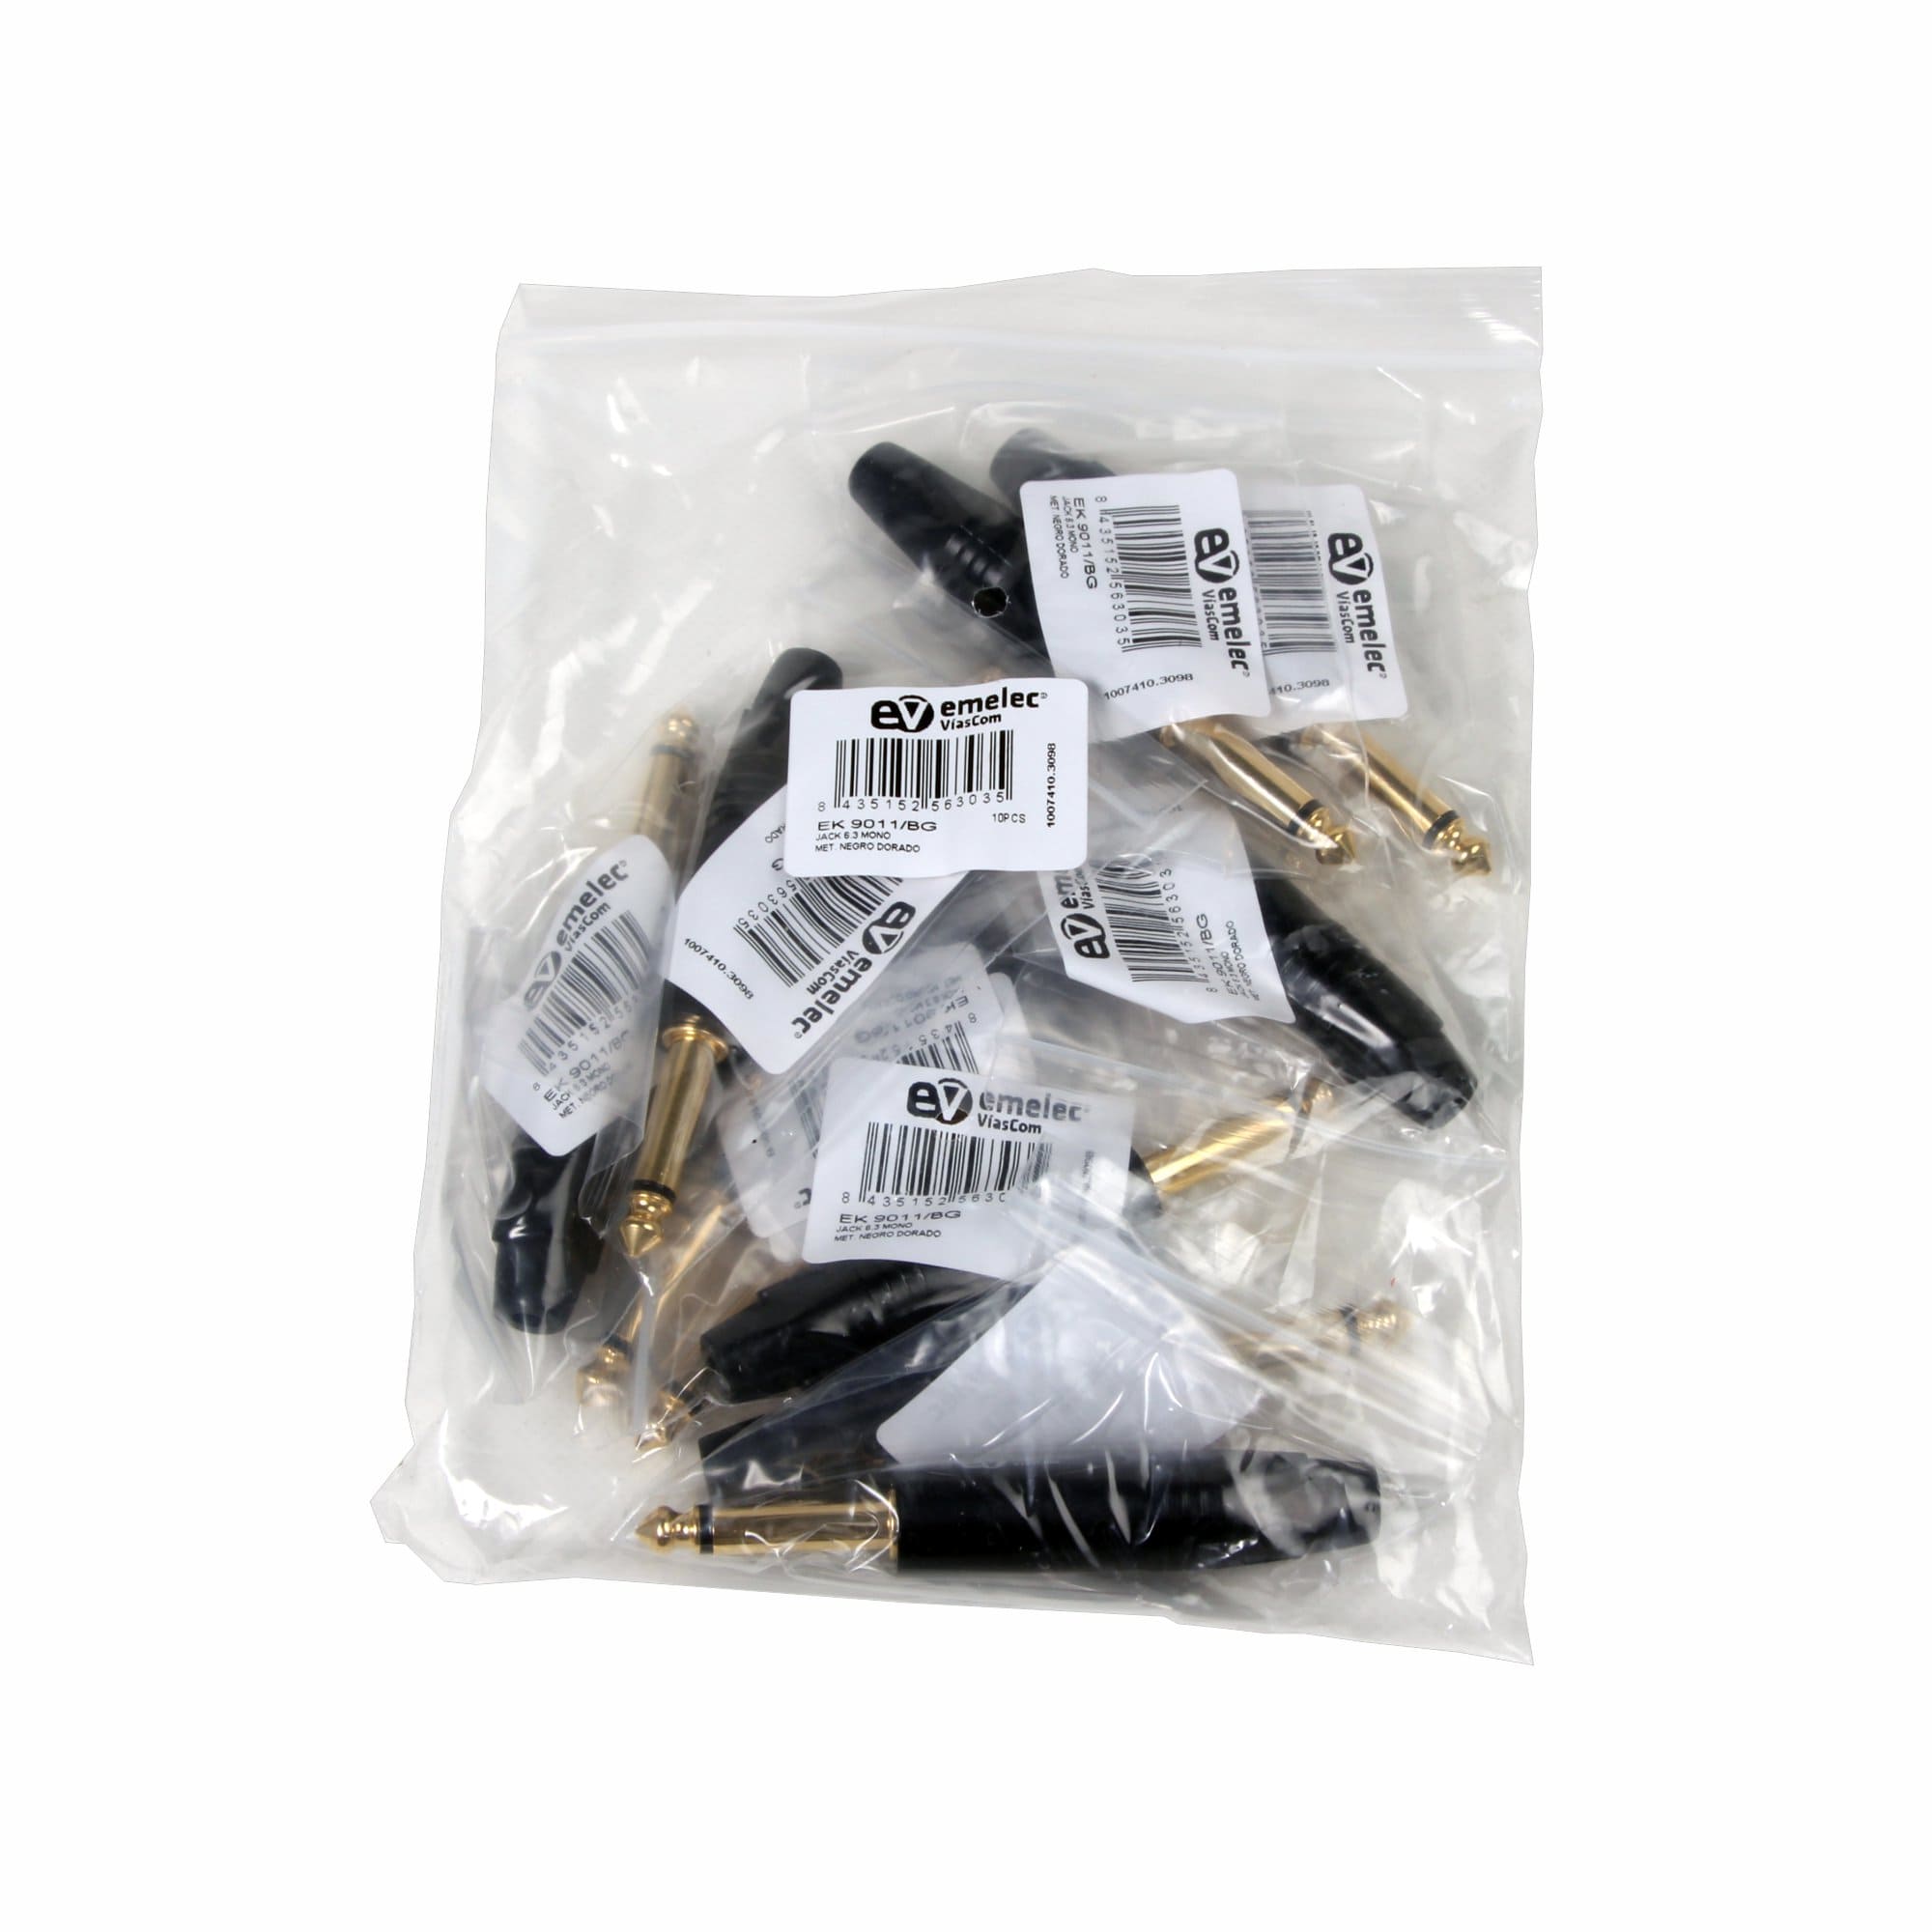 Saco de plástico com 10 conectores macho Jack 6.3 preto e dourado mono da Emelec ViasCom